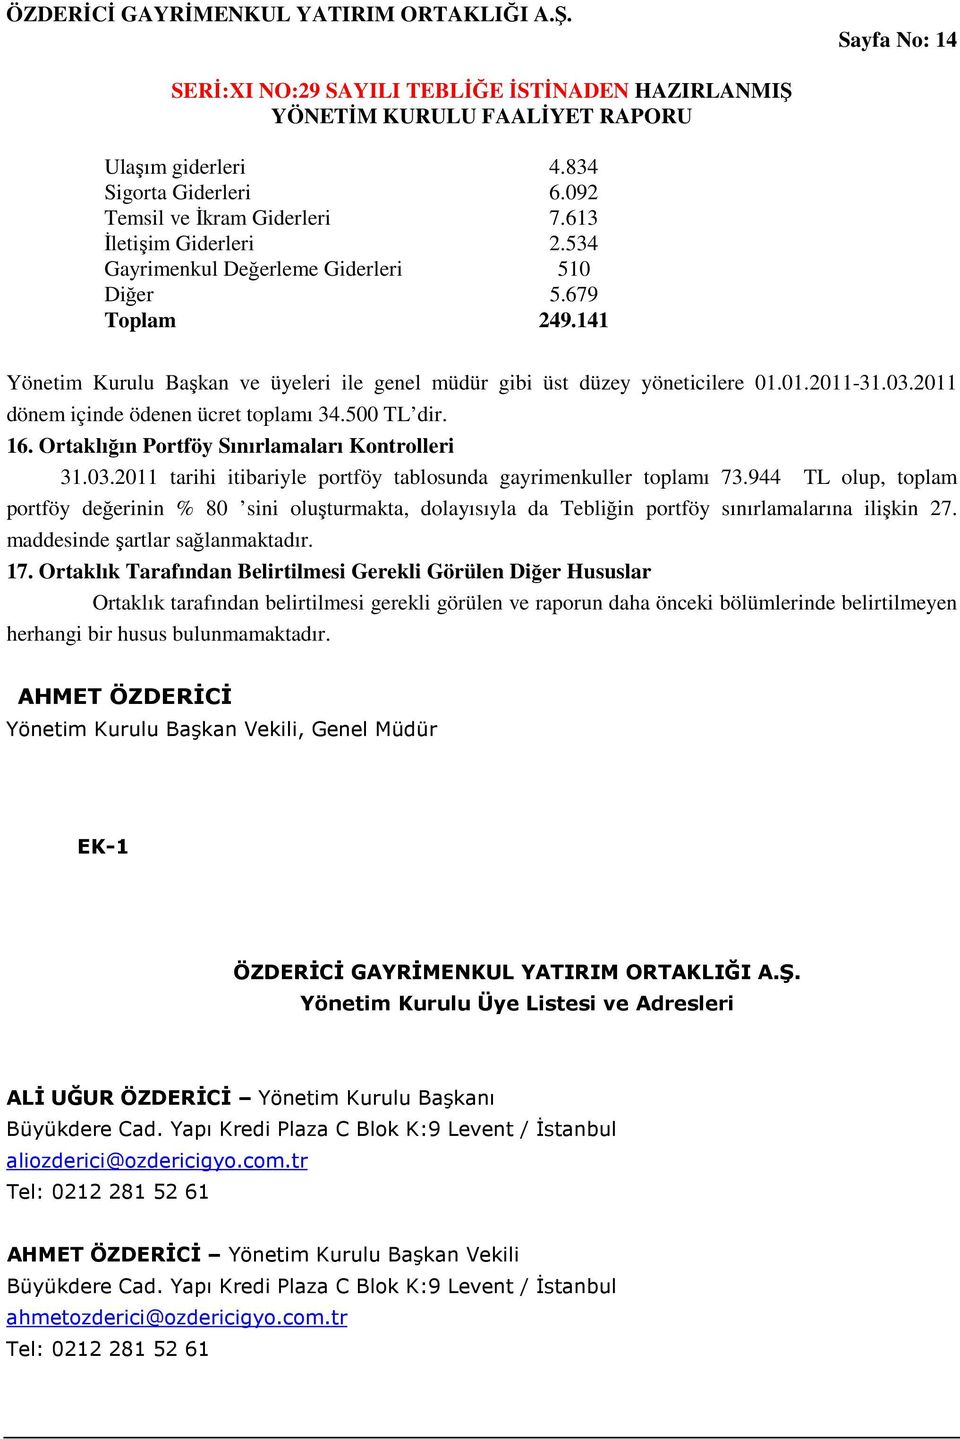 Ortaklığın Portföy Sınırlamaları Kontrolleri 31.03.2011 tarihi itibariyle portföy tablosunda gayrimenkuller toplamı 73.